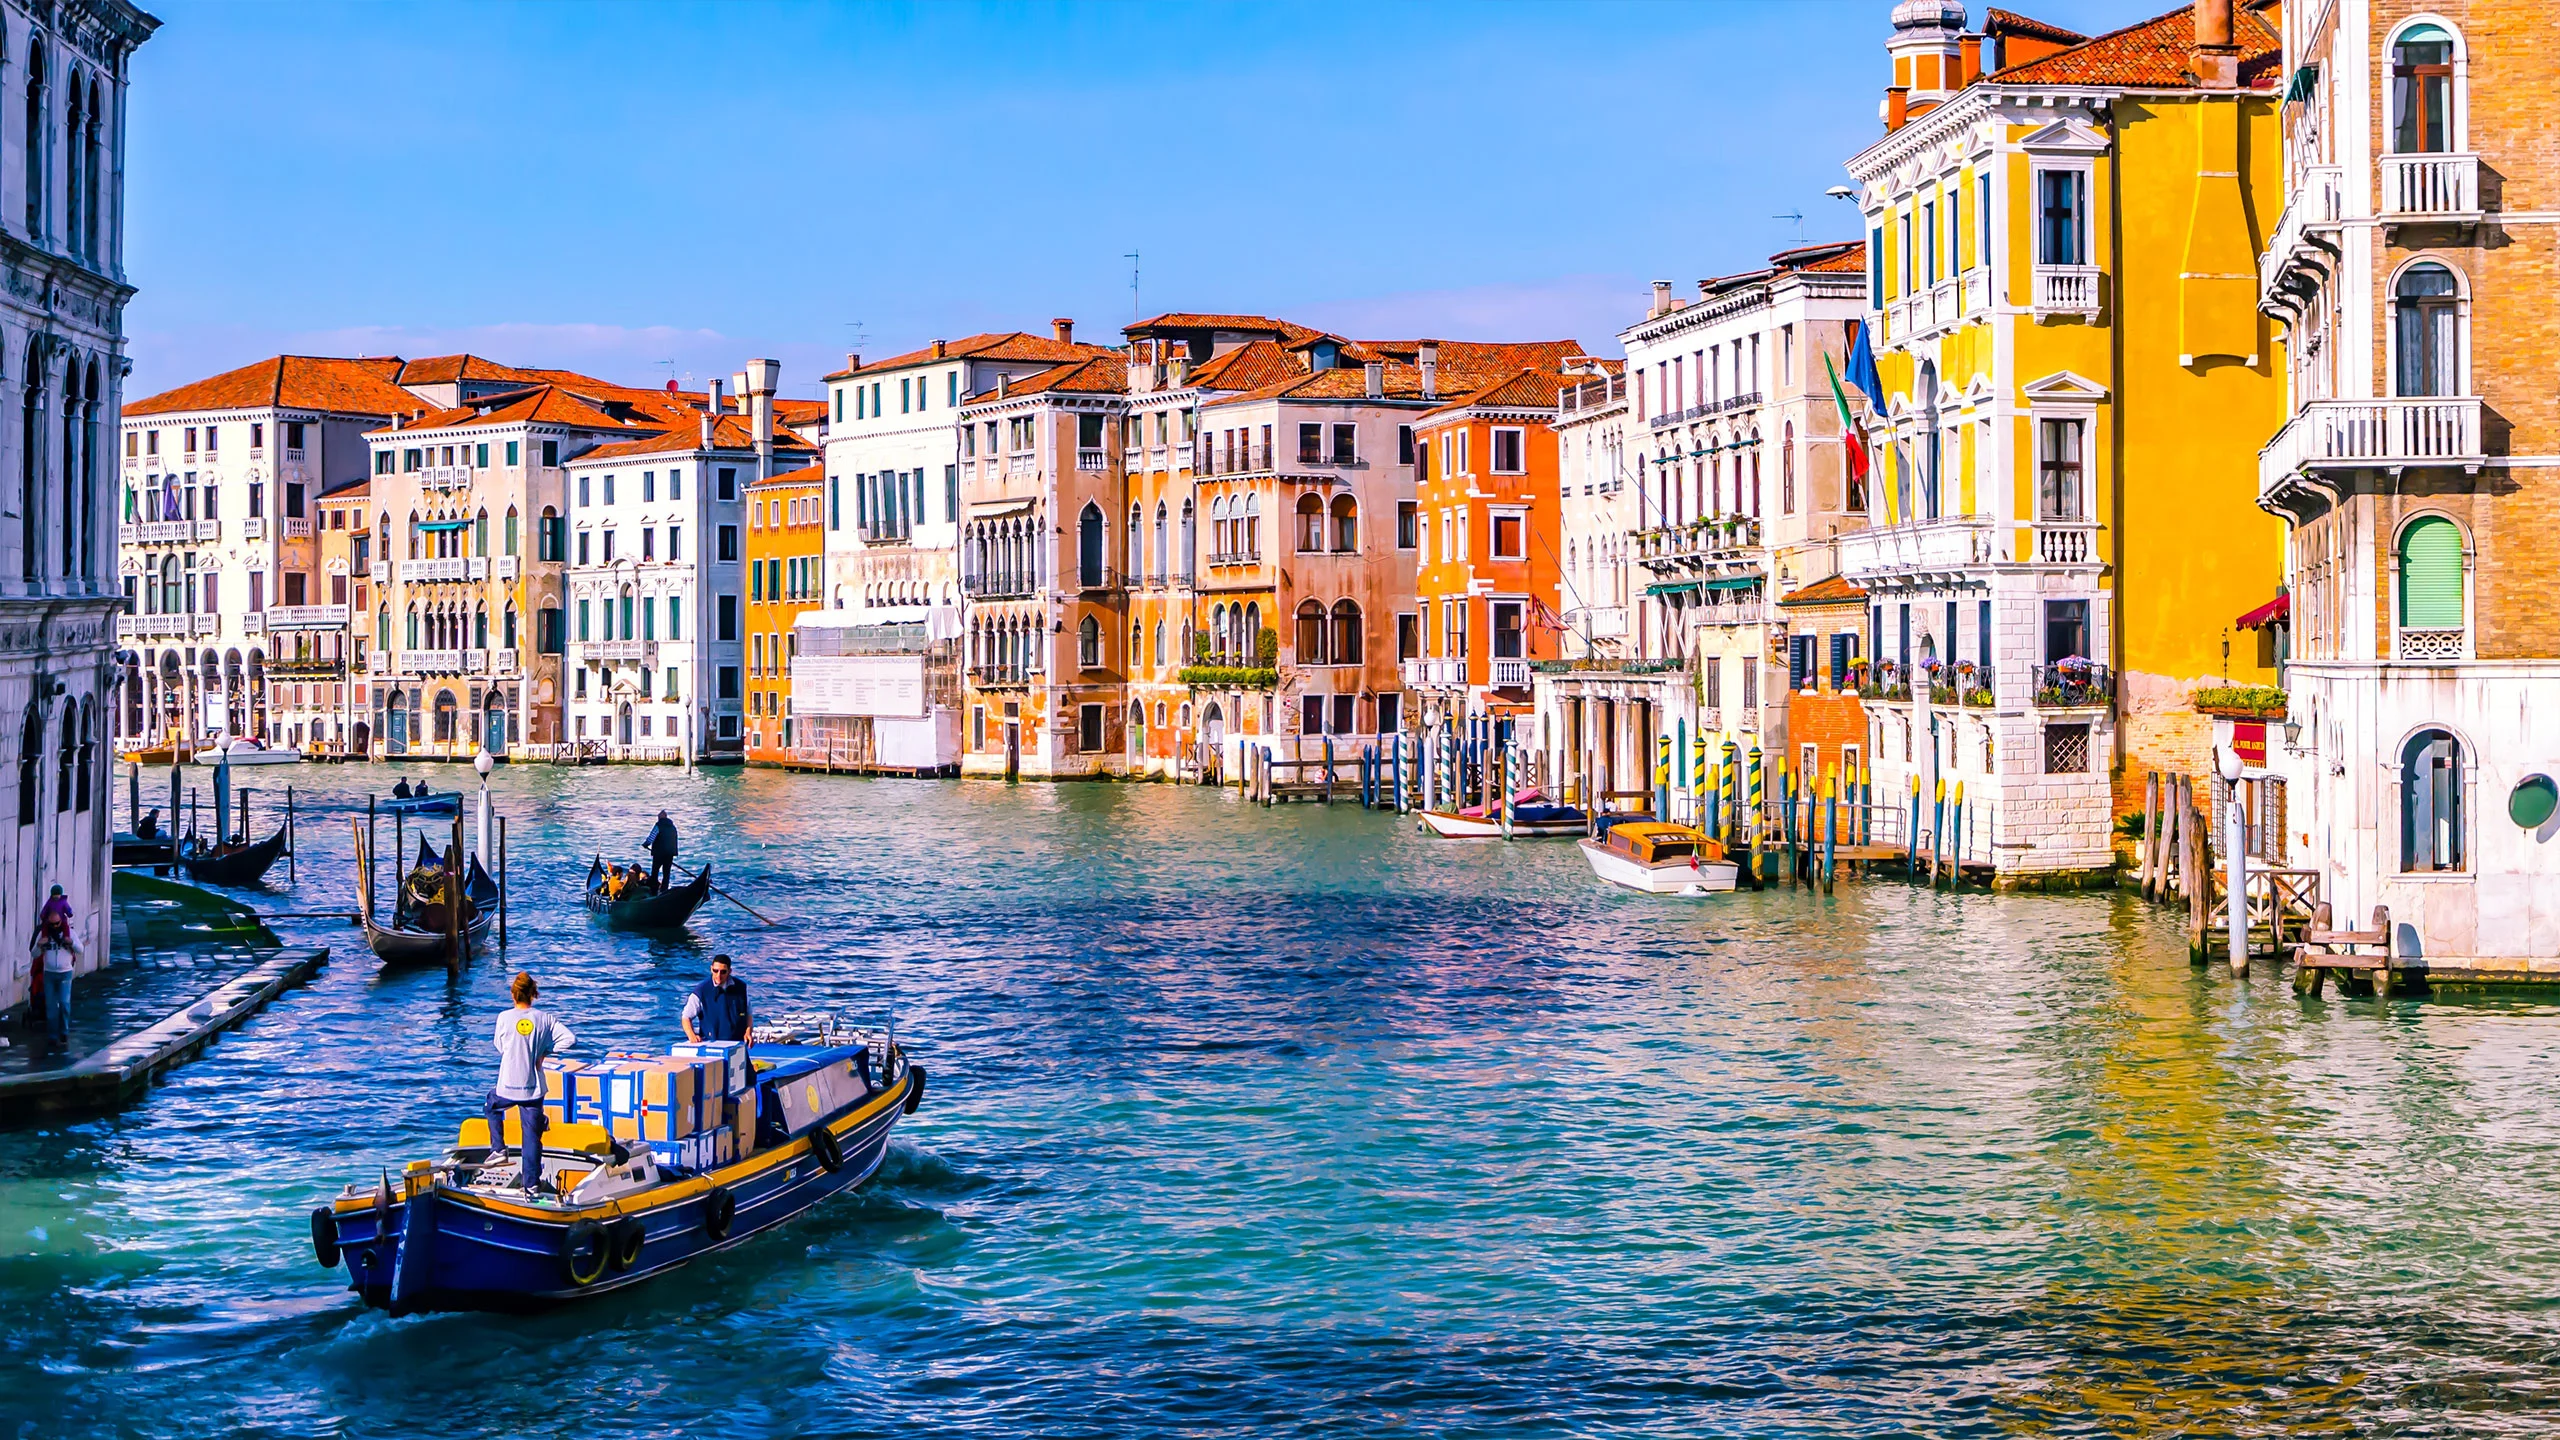 Venecia cobrará la entrada a turistas a partir del 2022